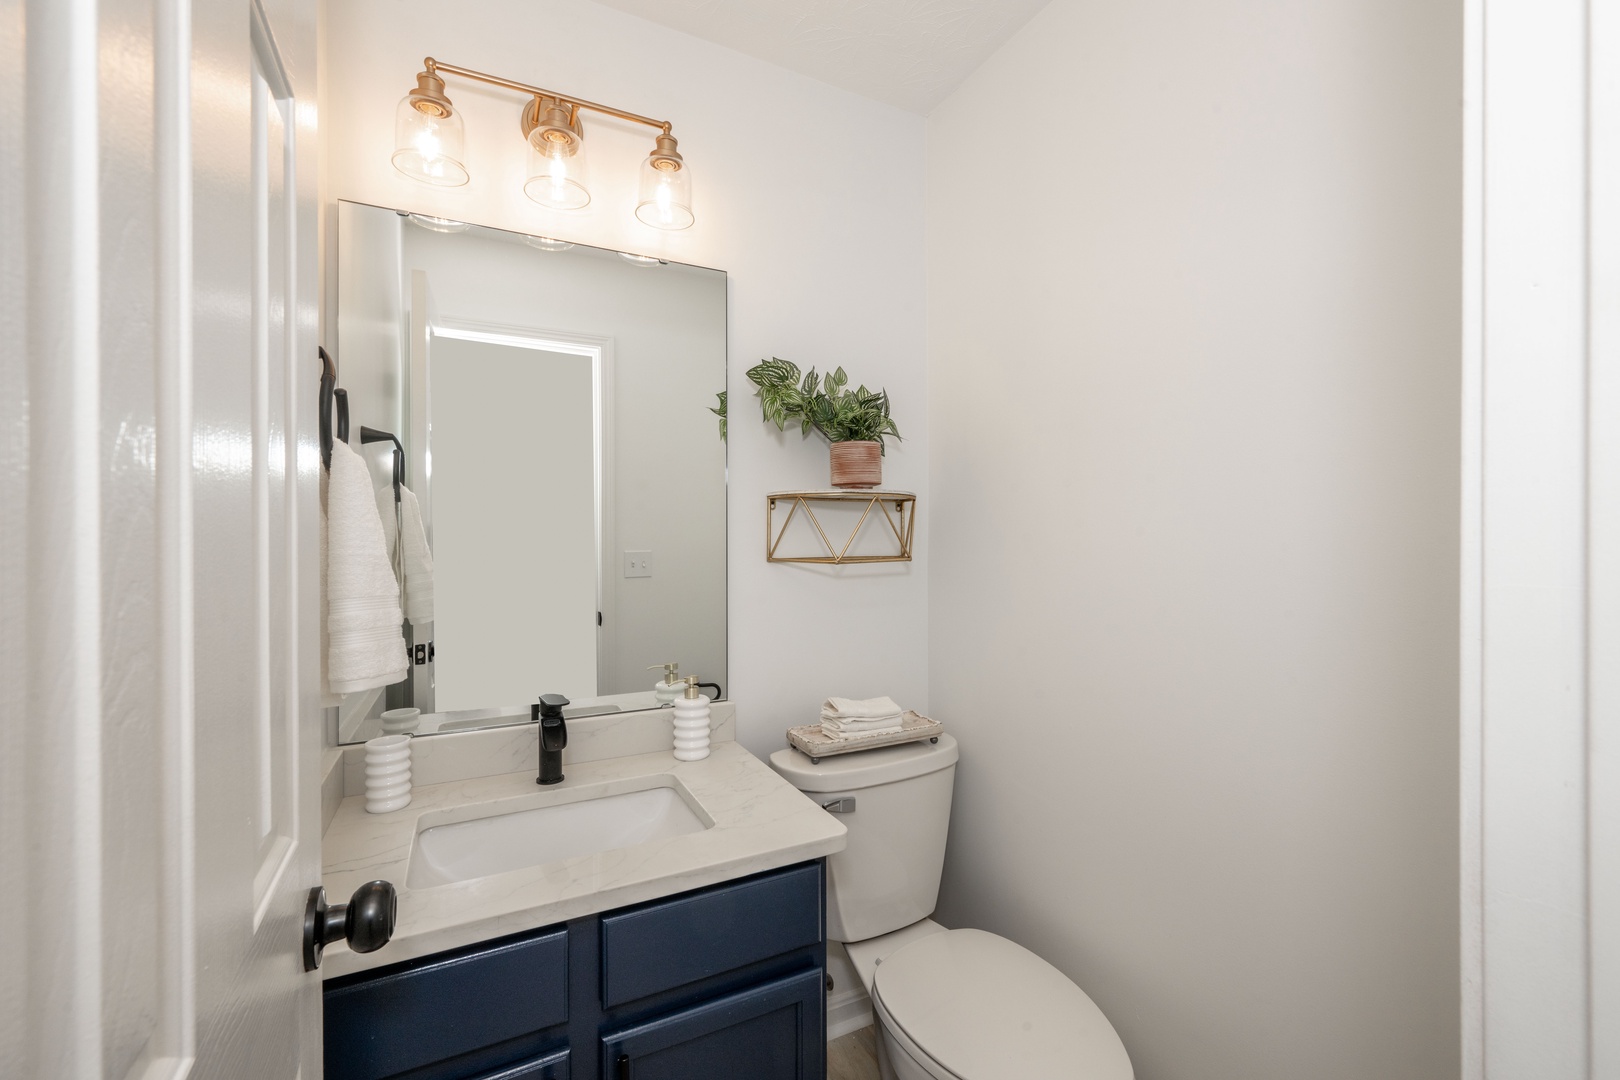 This half bathroom contains a single vanity